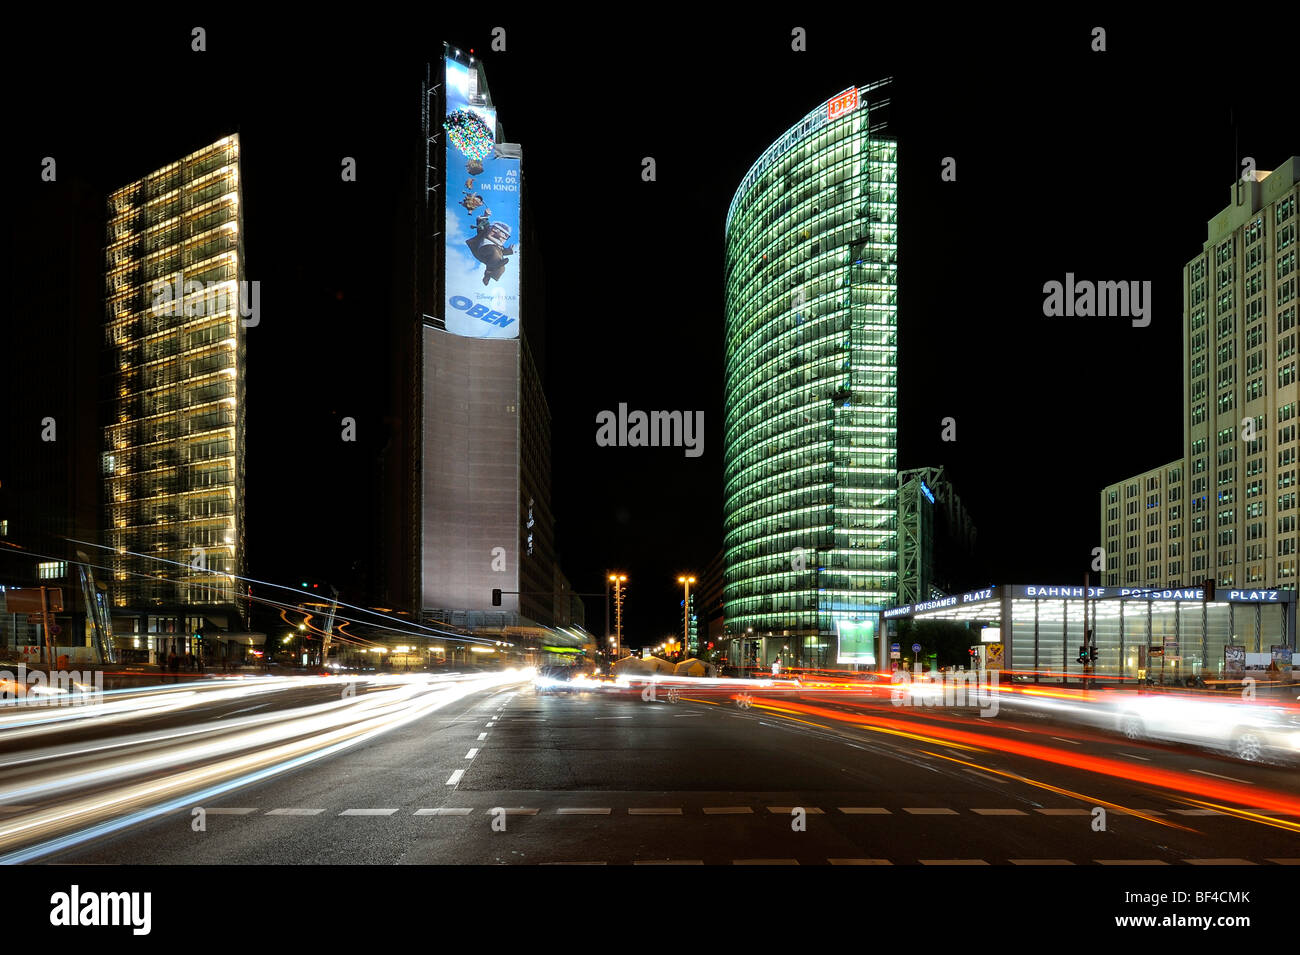 Les bâtiments de grande hauteur, le Sony Center de nuit avec légèreté, Berlin, Germany, Europe Banque D'Images